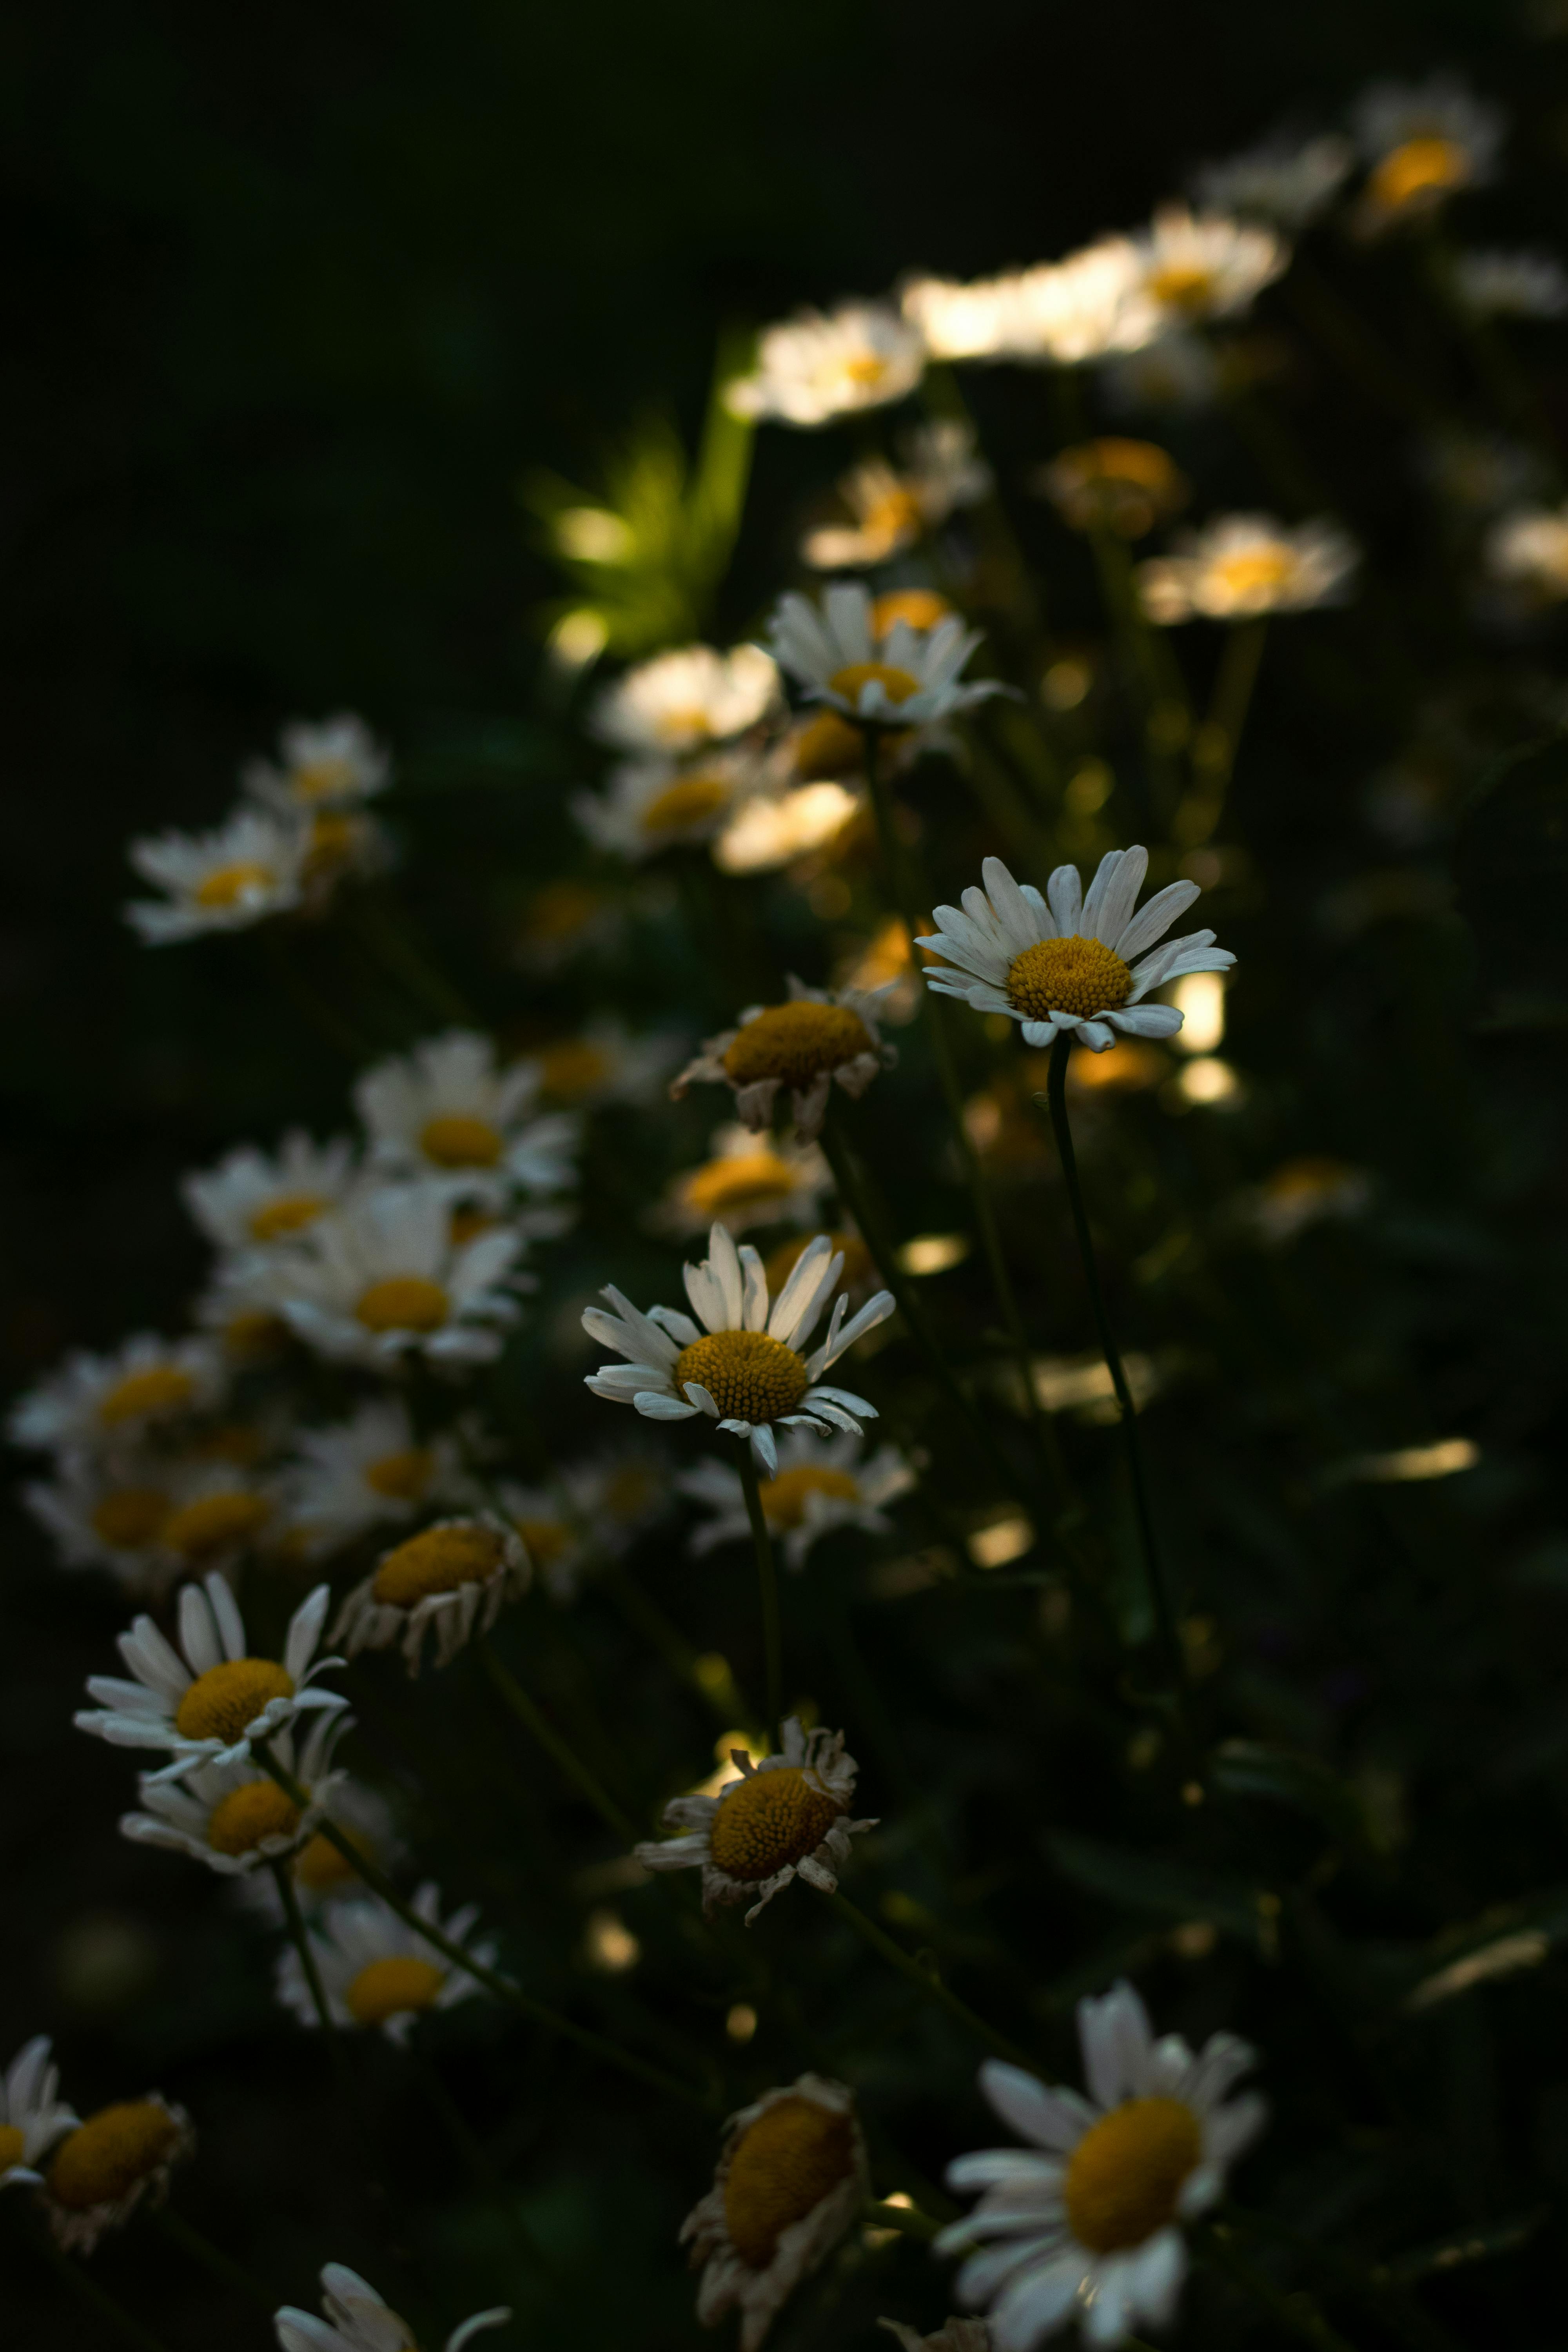 Cùng chiêm ngưỡng đóa hoa trắng tuyệt đẹp trên hình ảnh này và cảm nhận sự mộc mạc, thanh khiết của chúng. Màu trắng tượng trưng cho sự trong sáng, tinh khiết và thuần khiết. Bạn sẽ được dịp thư giãn và đắm mình trong không gian yên tĩnh và sự tuyệt đẹp của đóa hoa này.